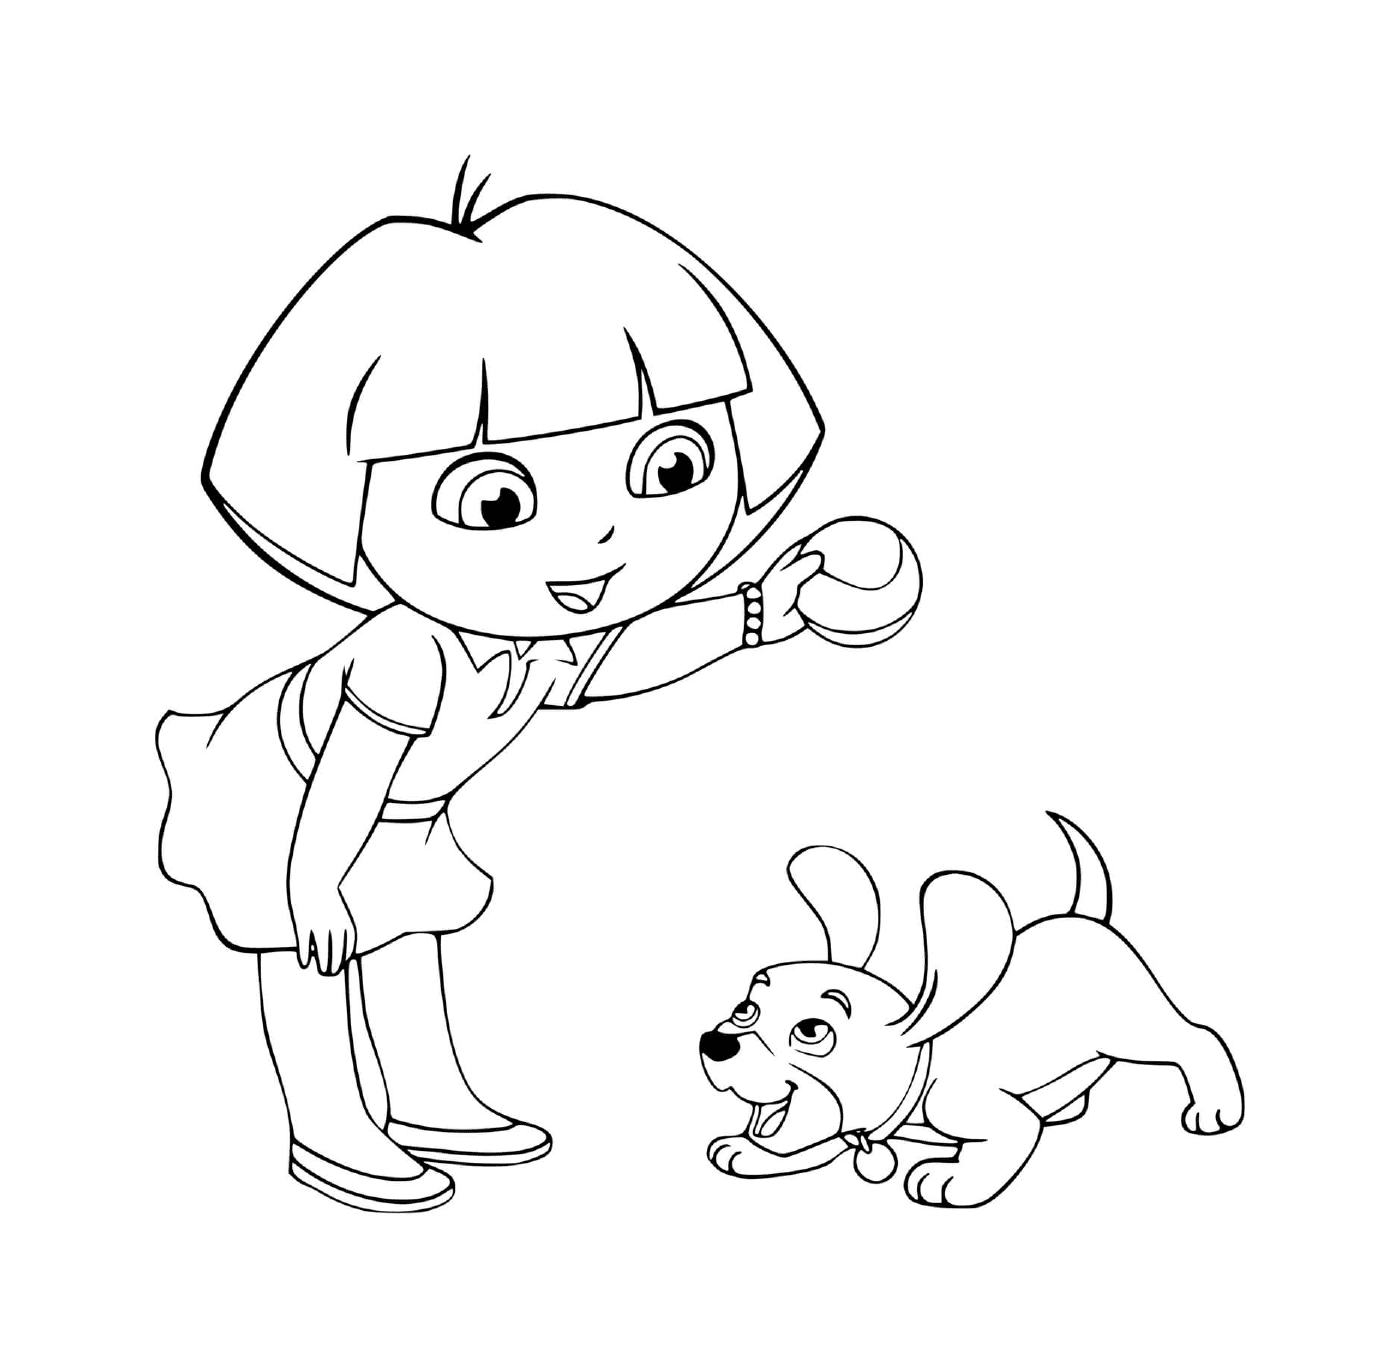  Дора играет в мяч со своей собакой с радостью 